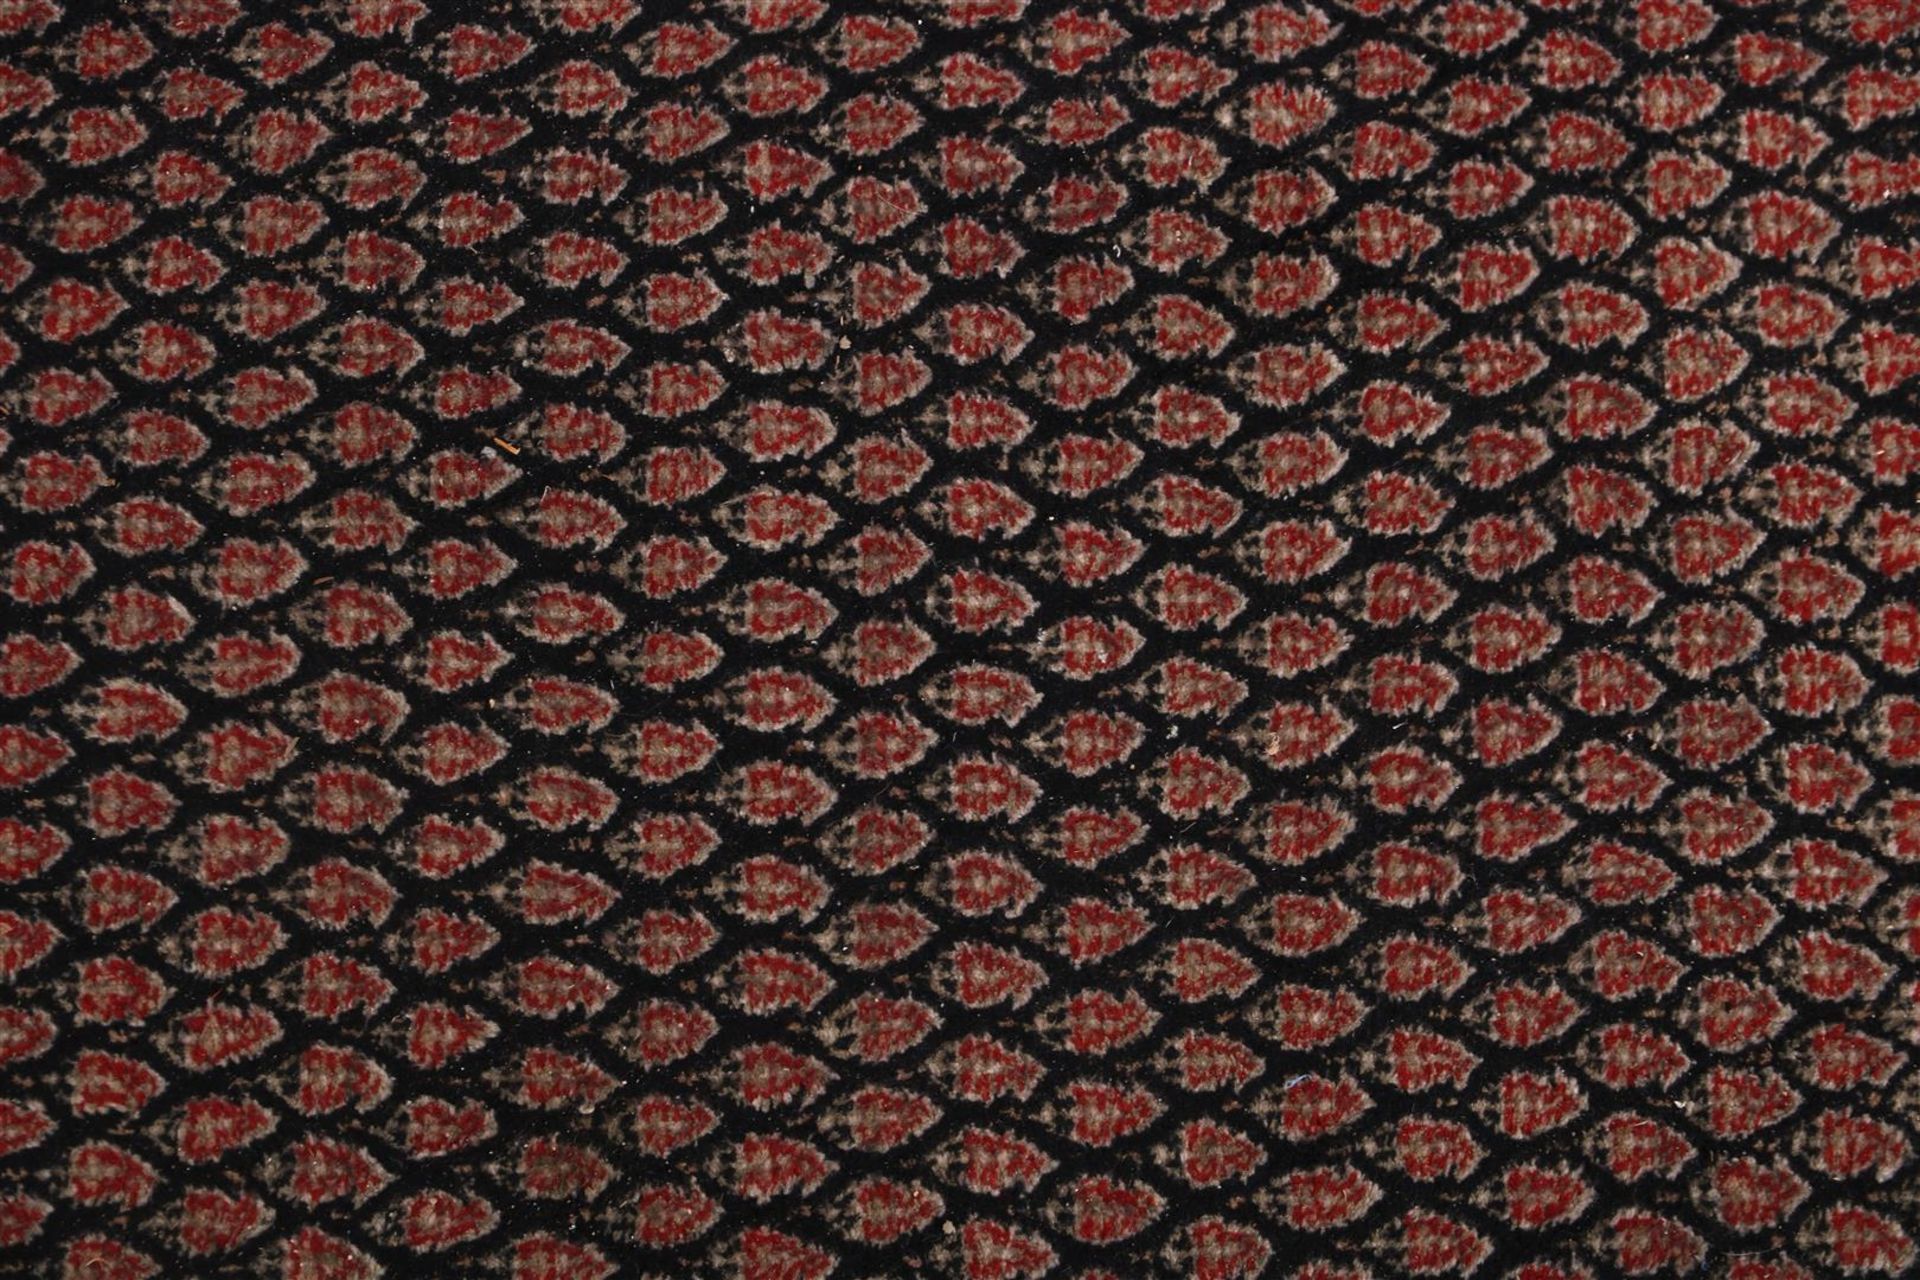 Hand-knotted wool carpet, Mihr - Bild 2 aus 4